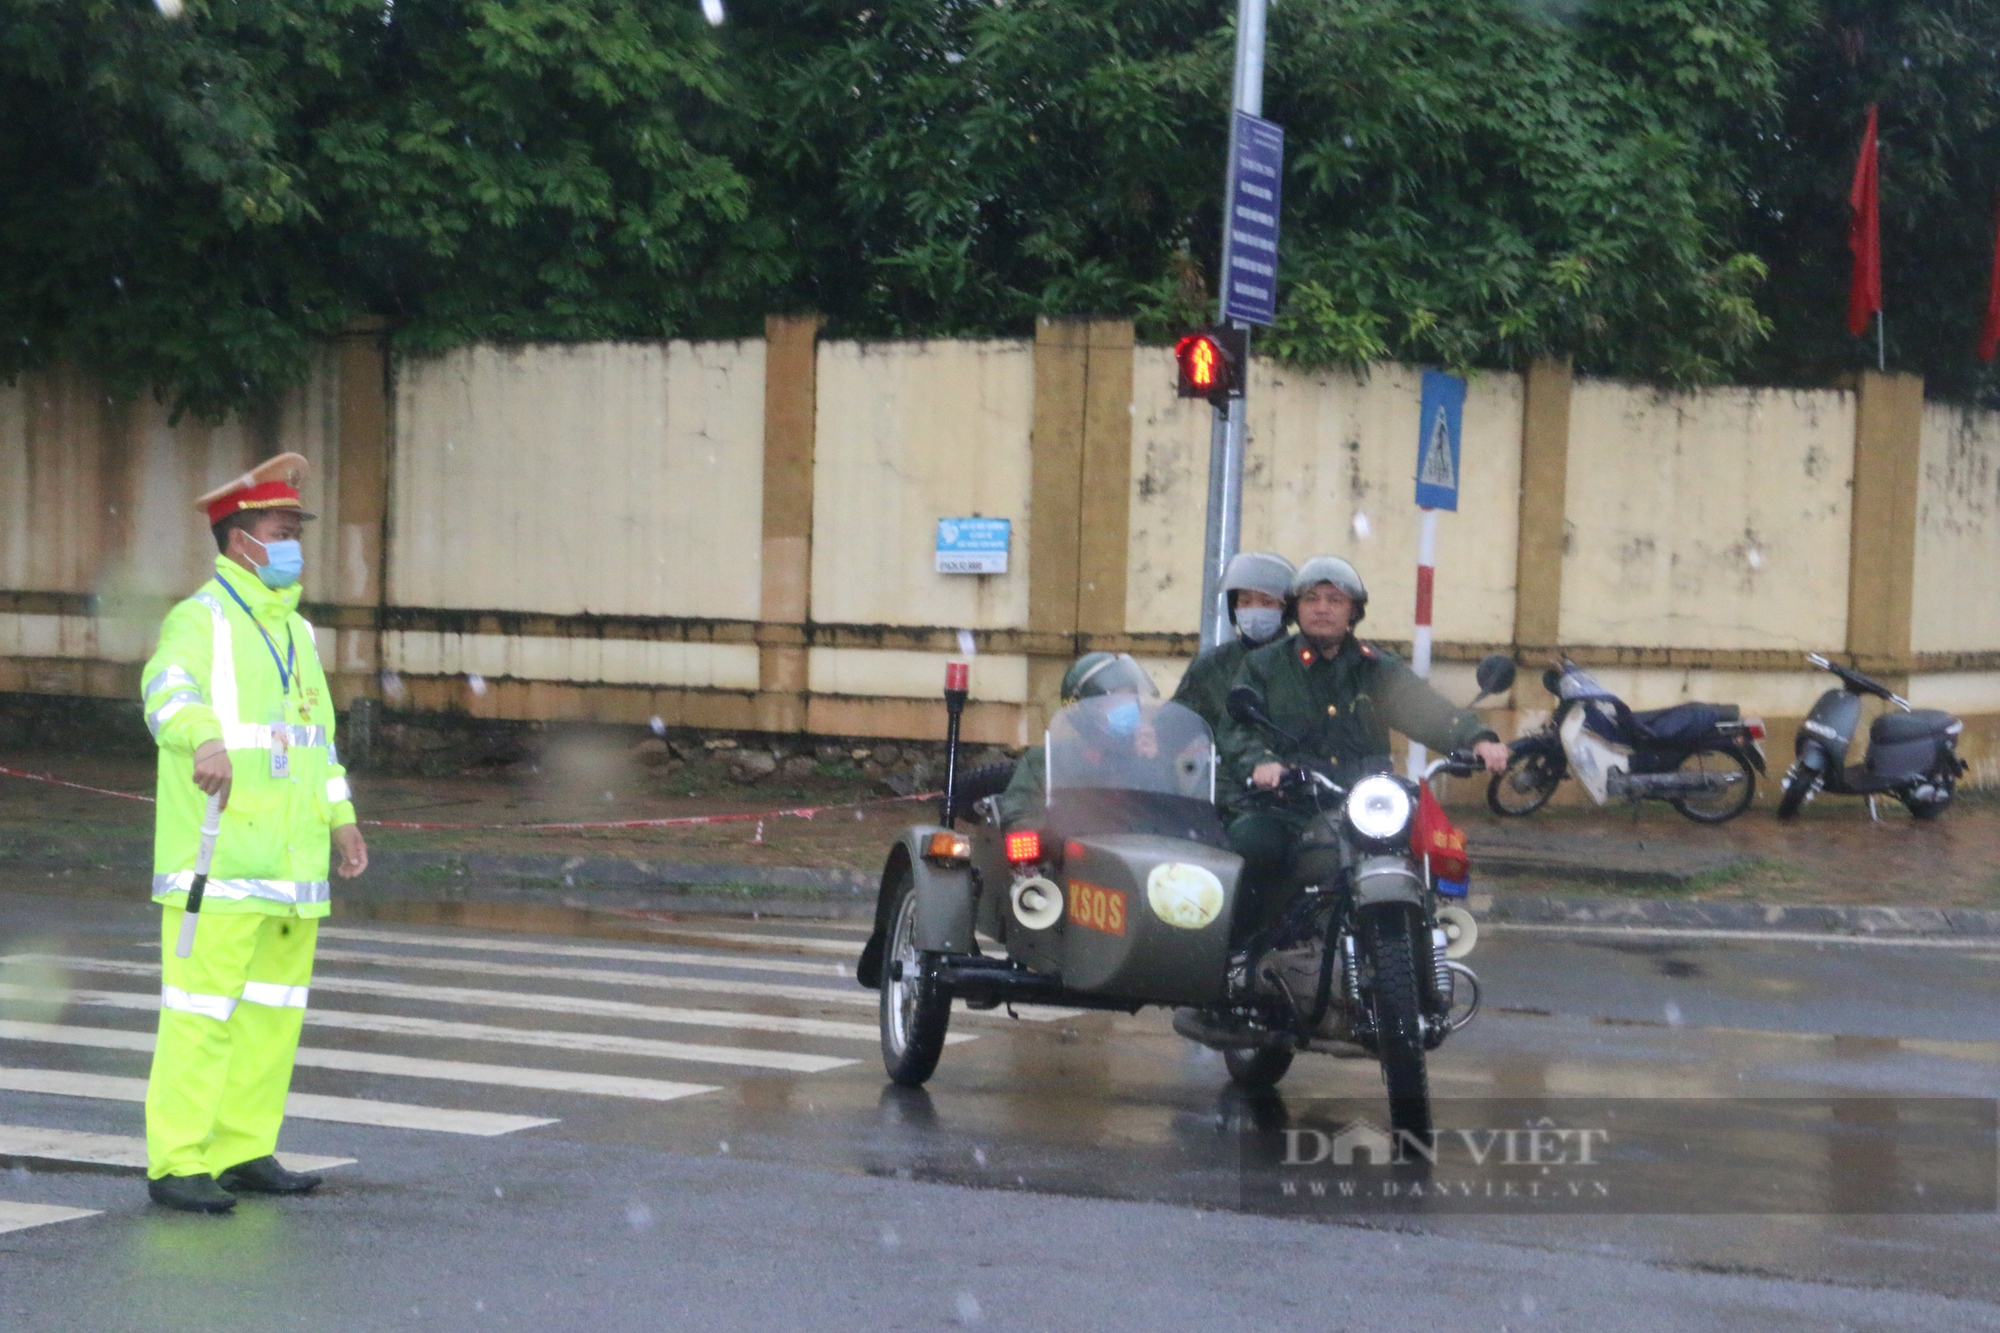  Chùm ảnh: Lực lượng CSGT Hoà Bình đầm mưa phân luồng giao thông phục vụ  - Ảnh 10.